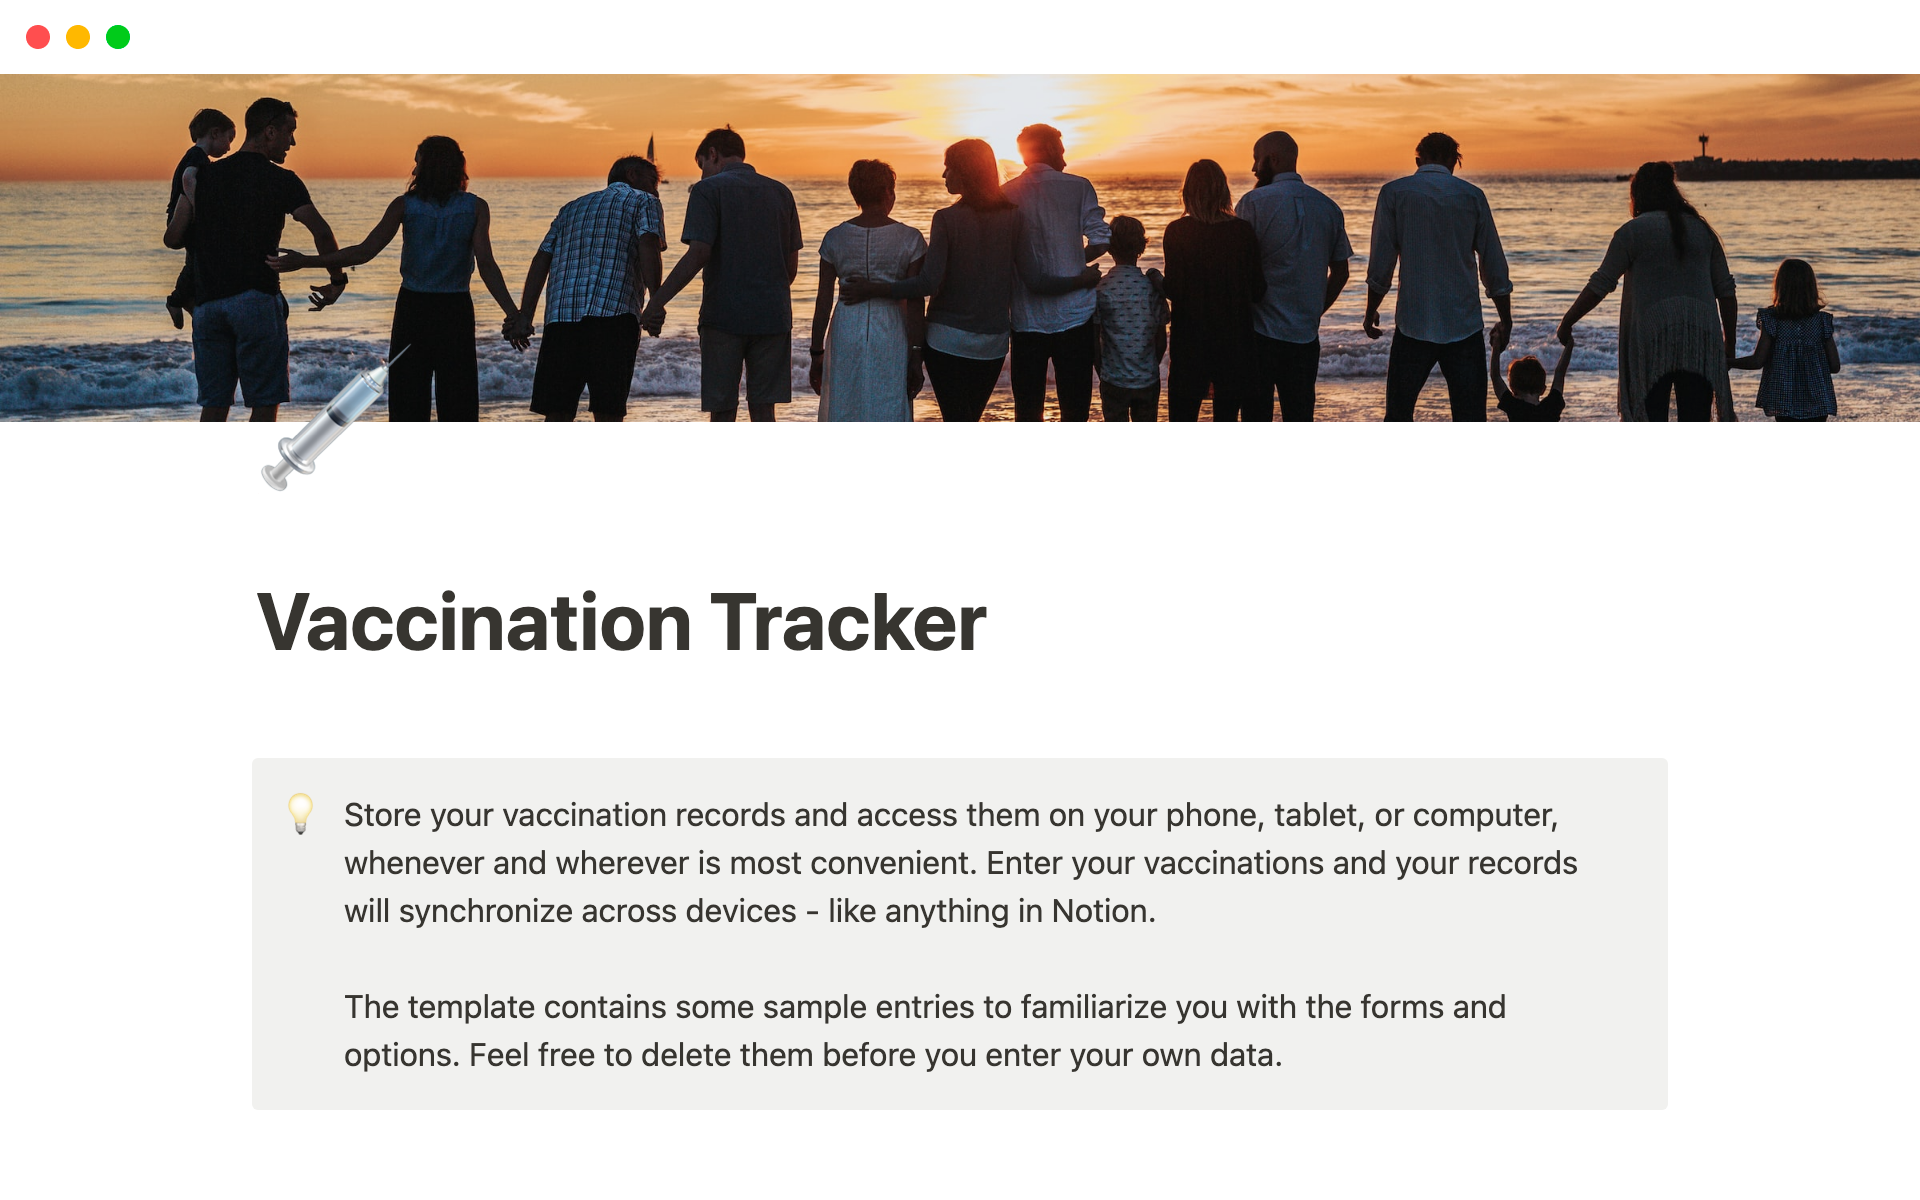 Vista previa de una plantilla para Vaccination Tracker